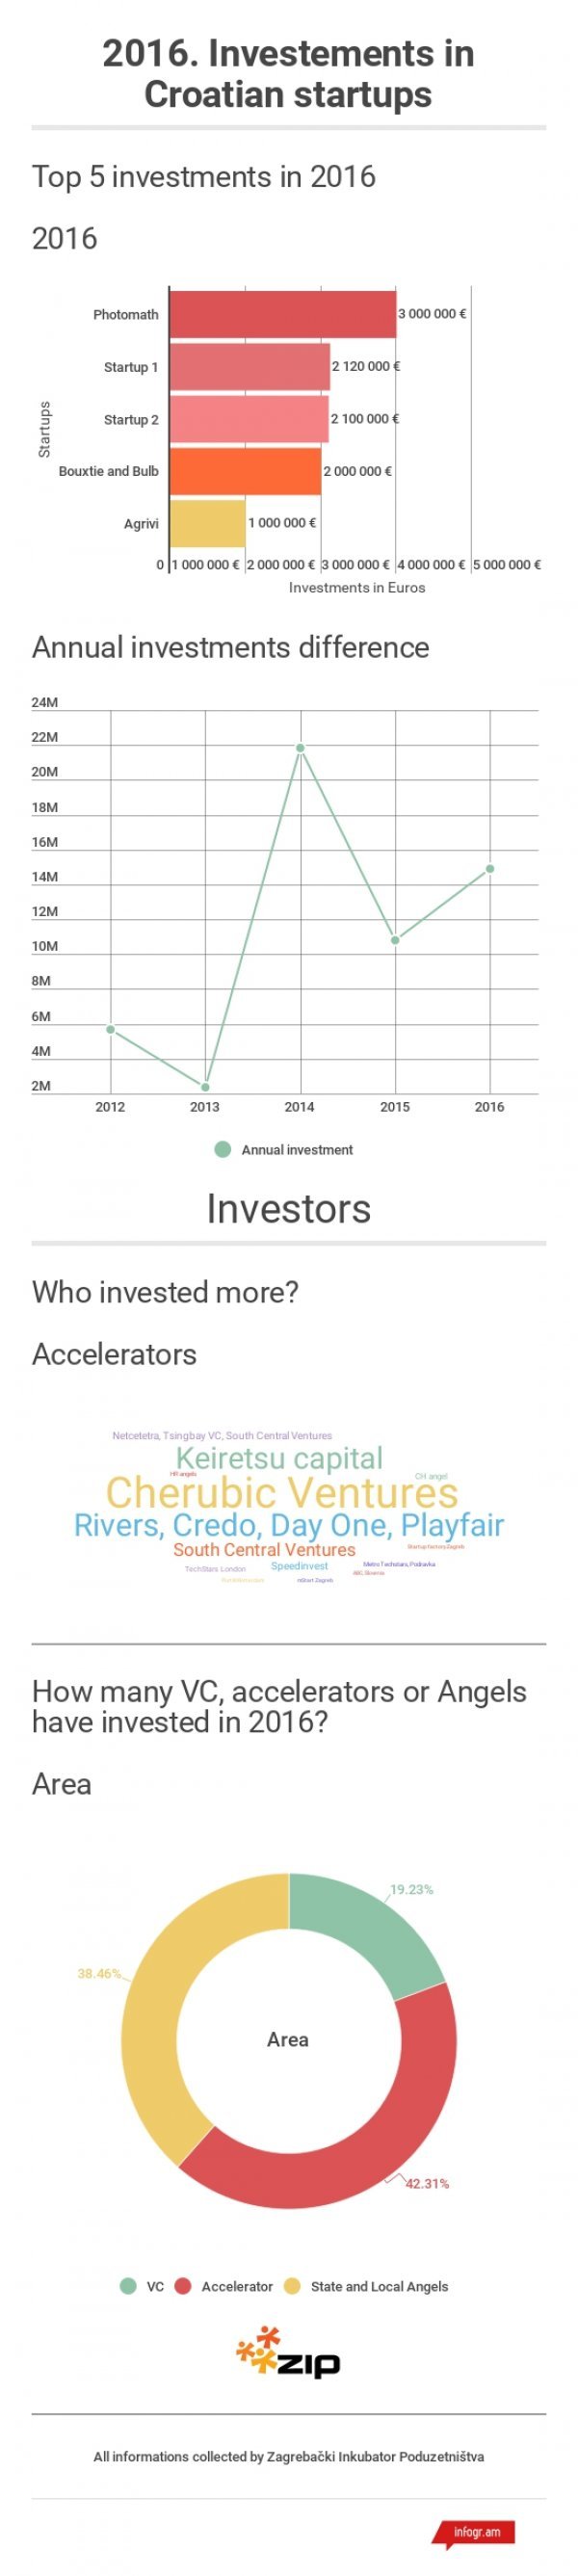 Investicije u hrvatske startupove u 2016. godini